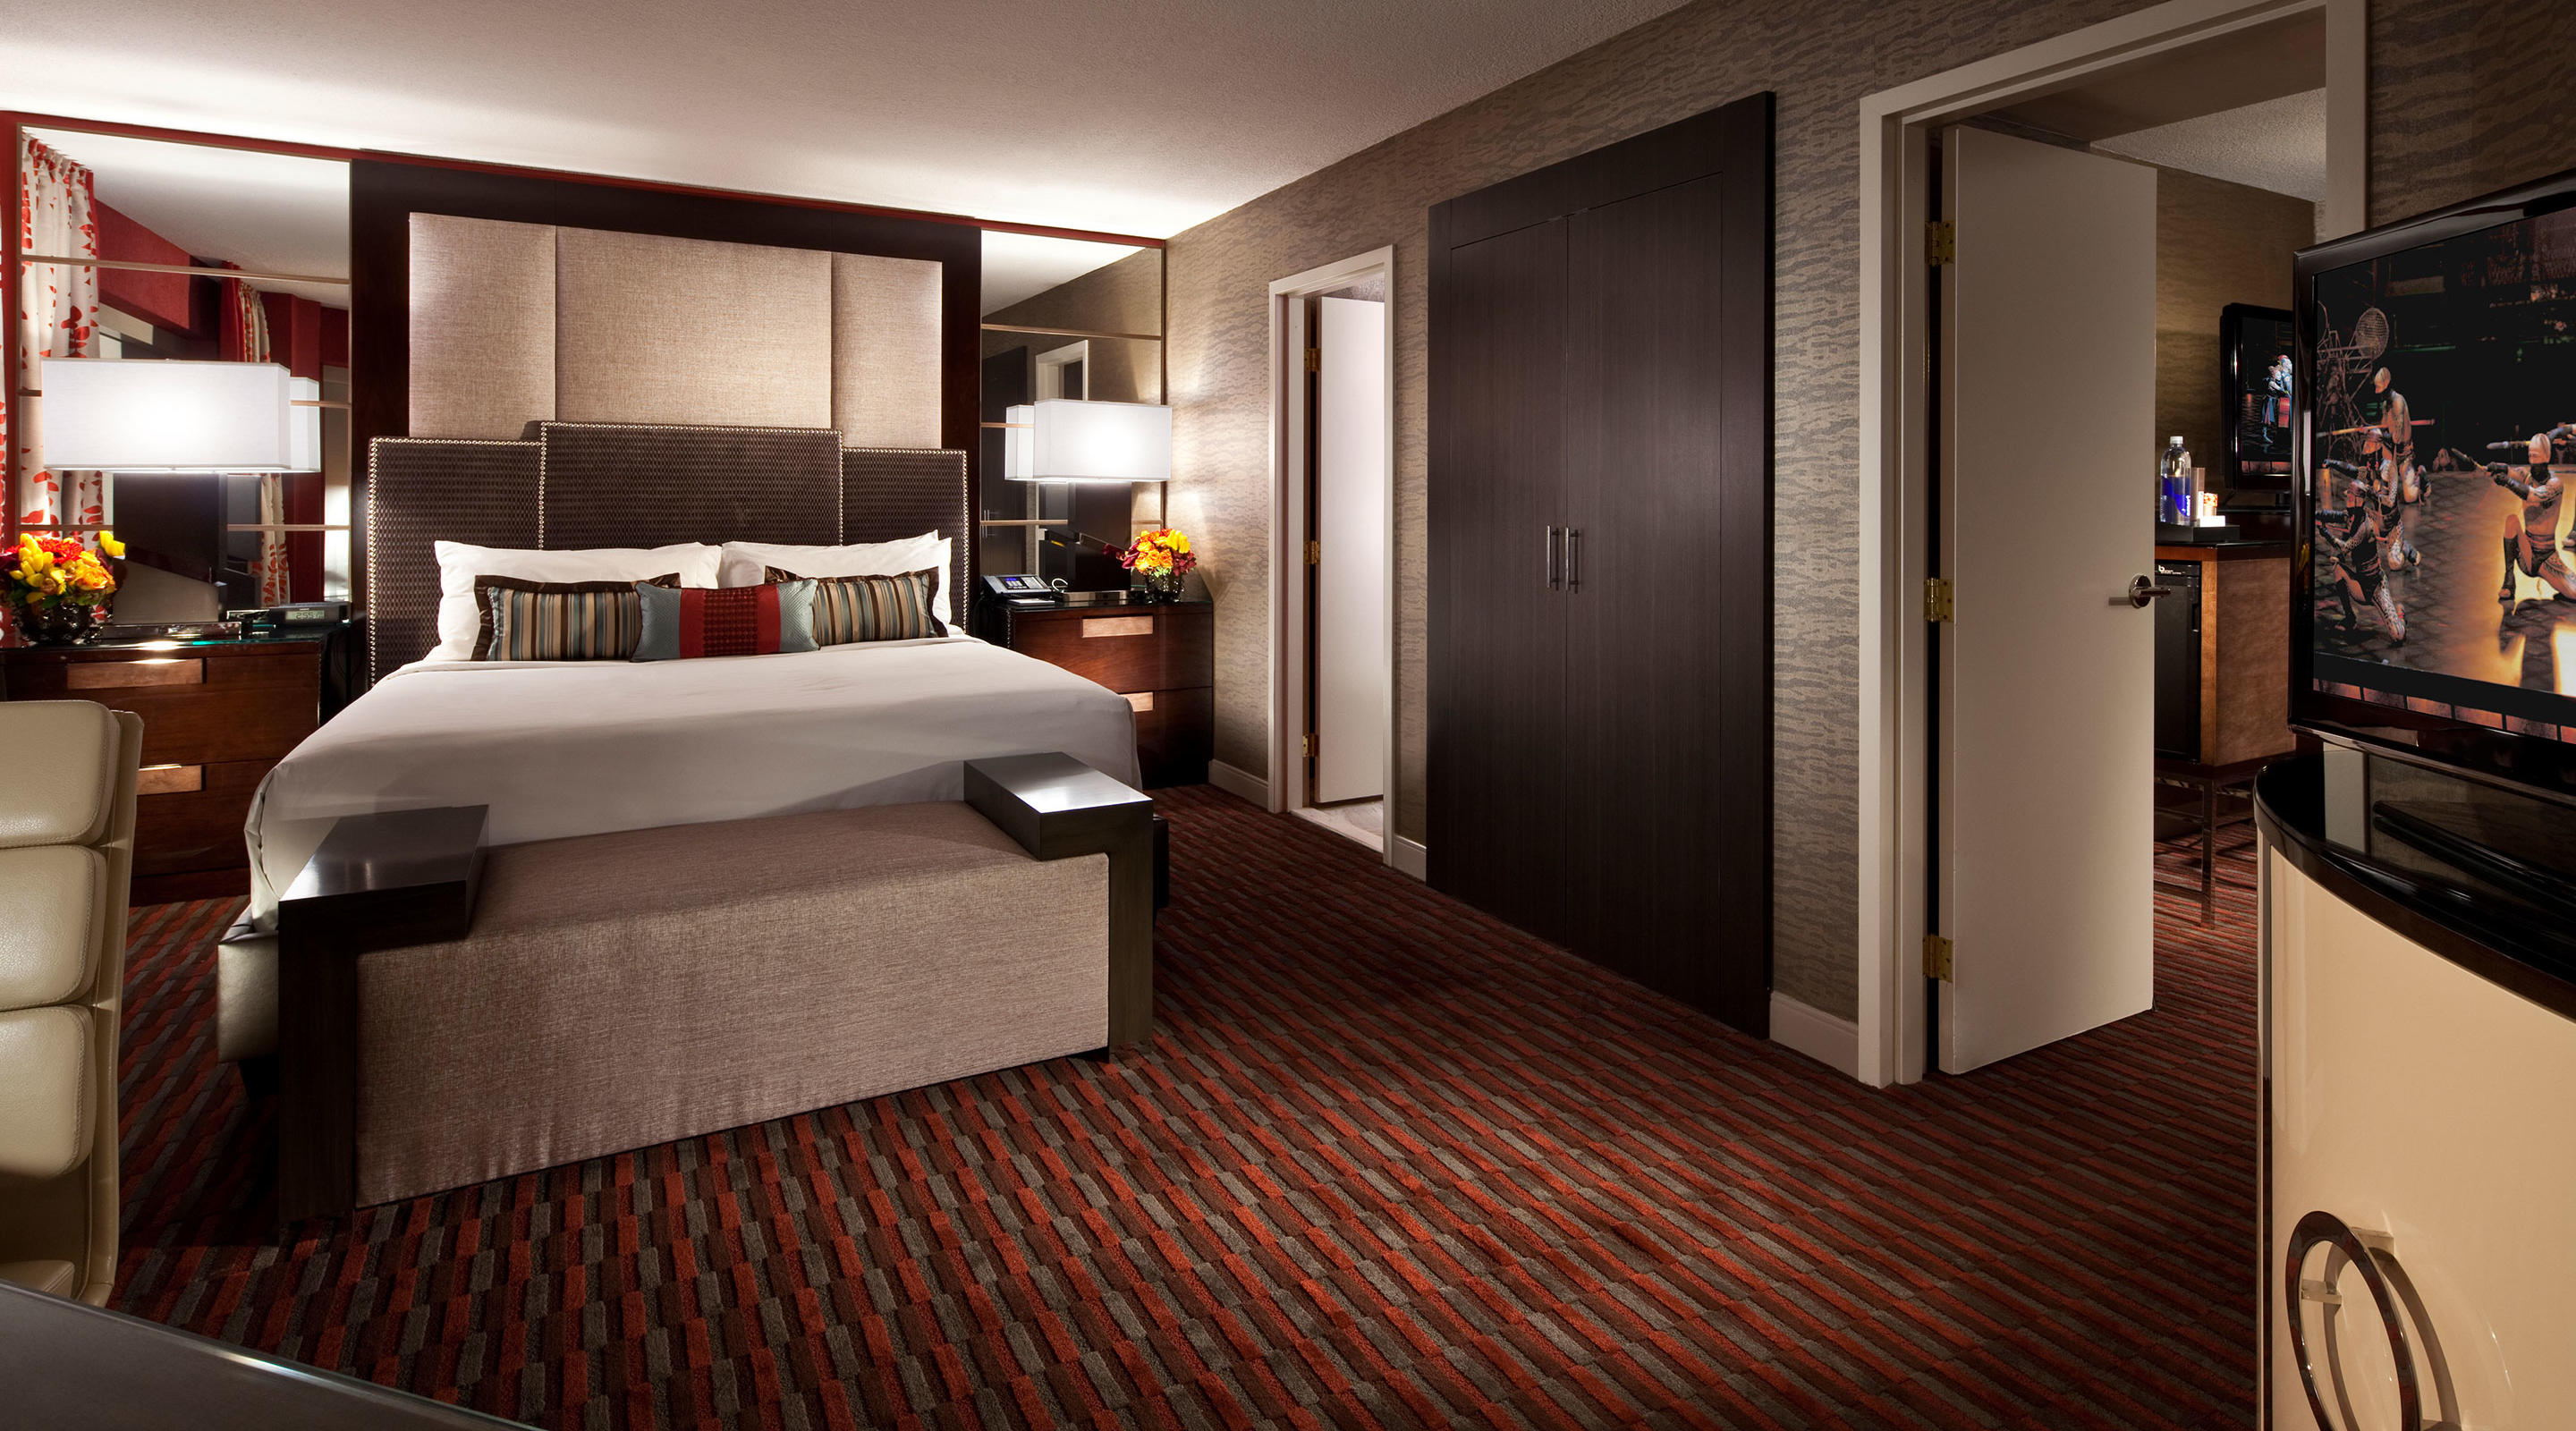 One bedroom suite. MGM Grand Hotel & Casino. Спальня Лас Вегас 2. MGM отель в Японии. MGM Grand Hotel Casino внутри.